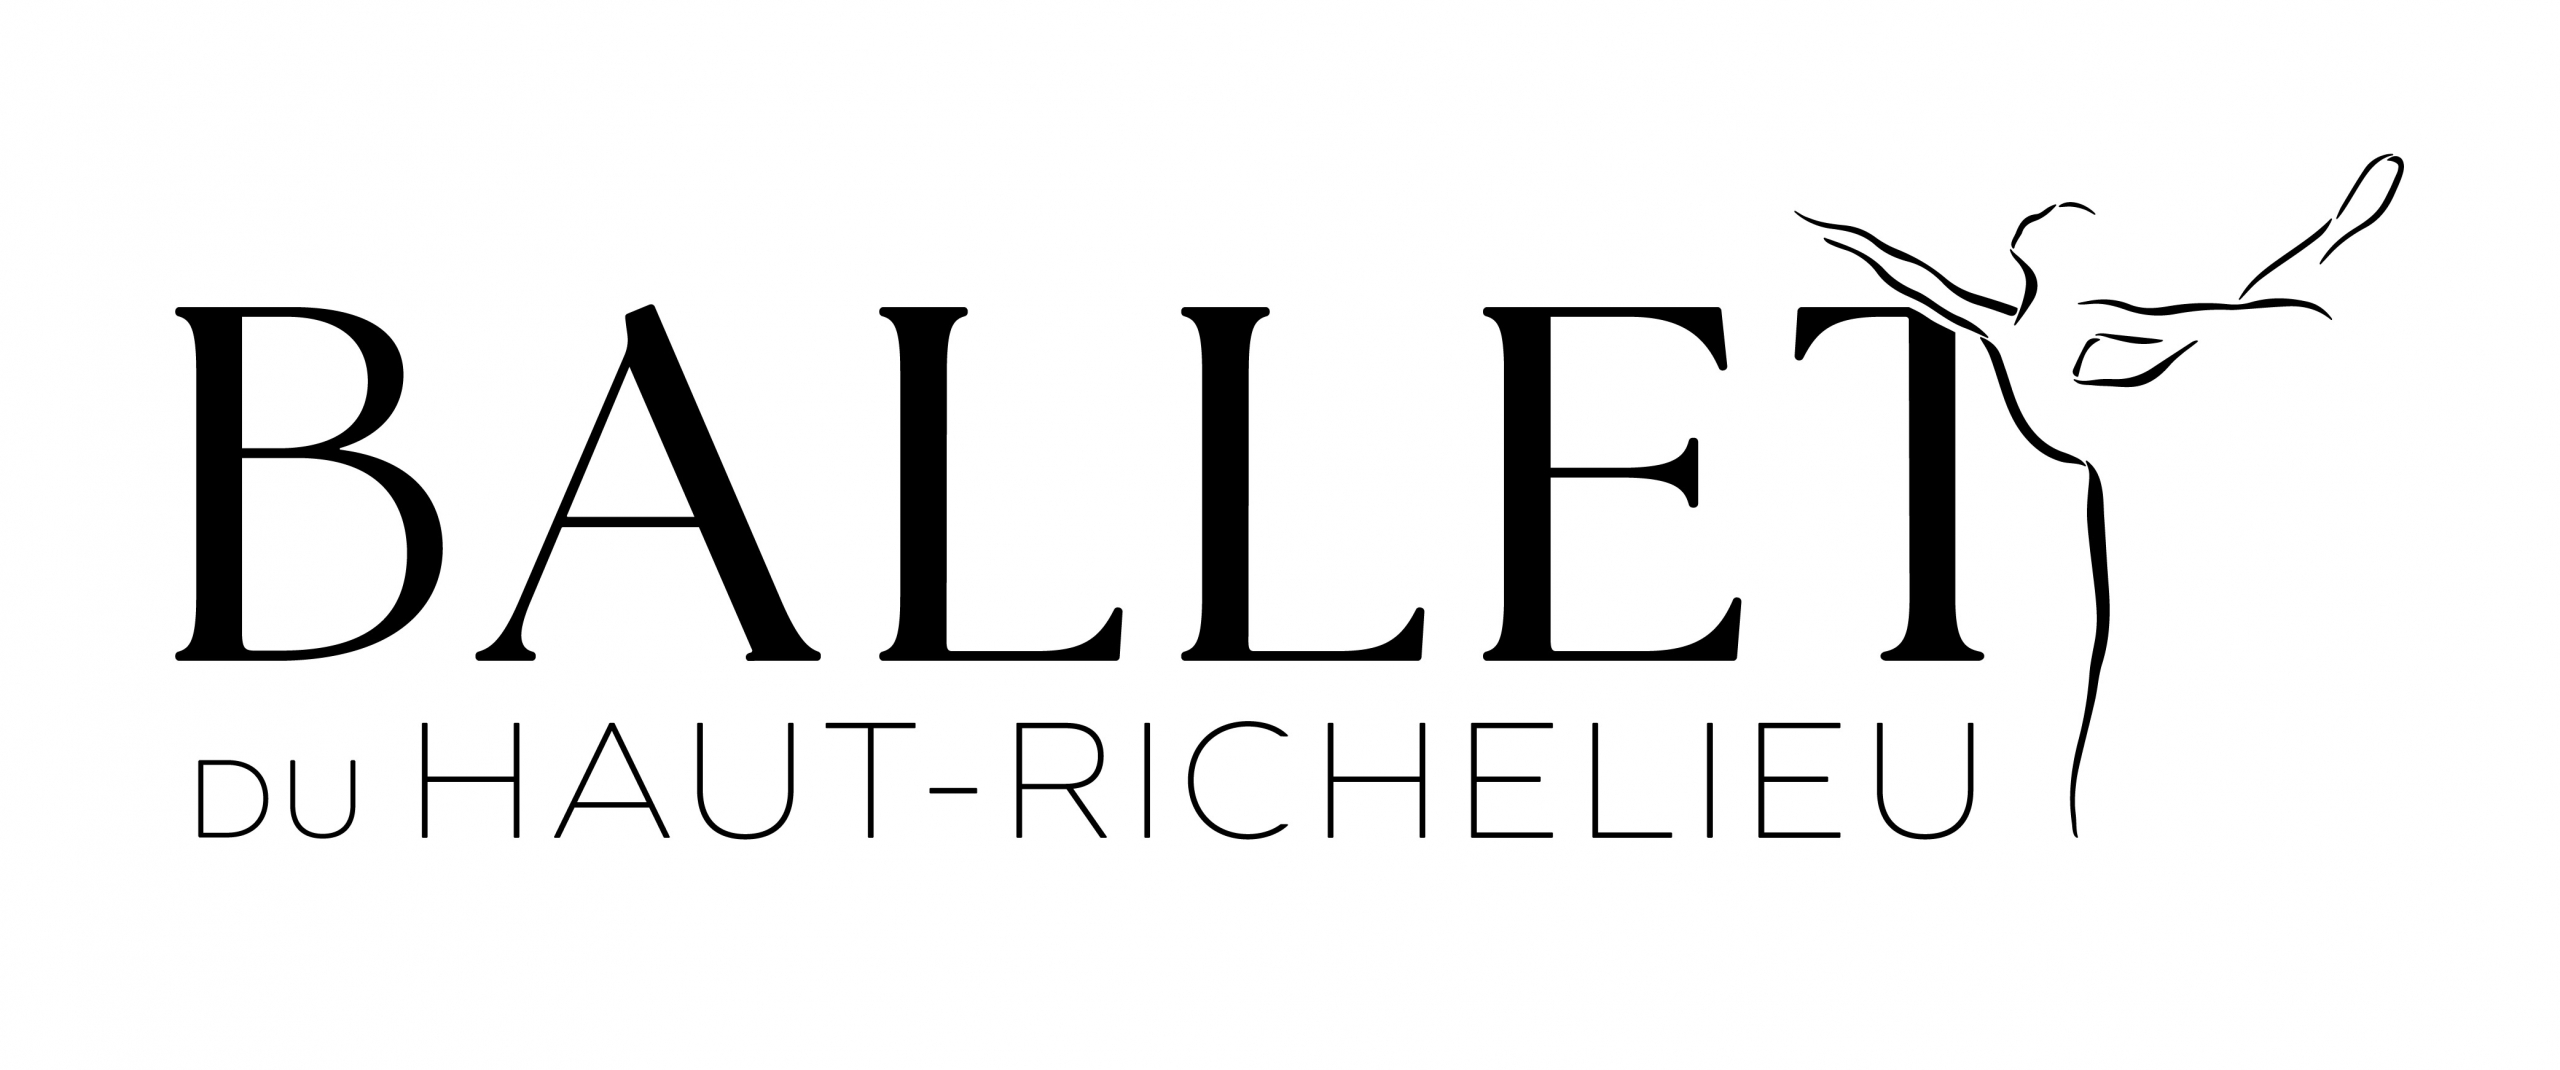 Ballet Haut-Richelieu